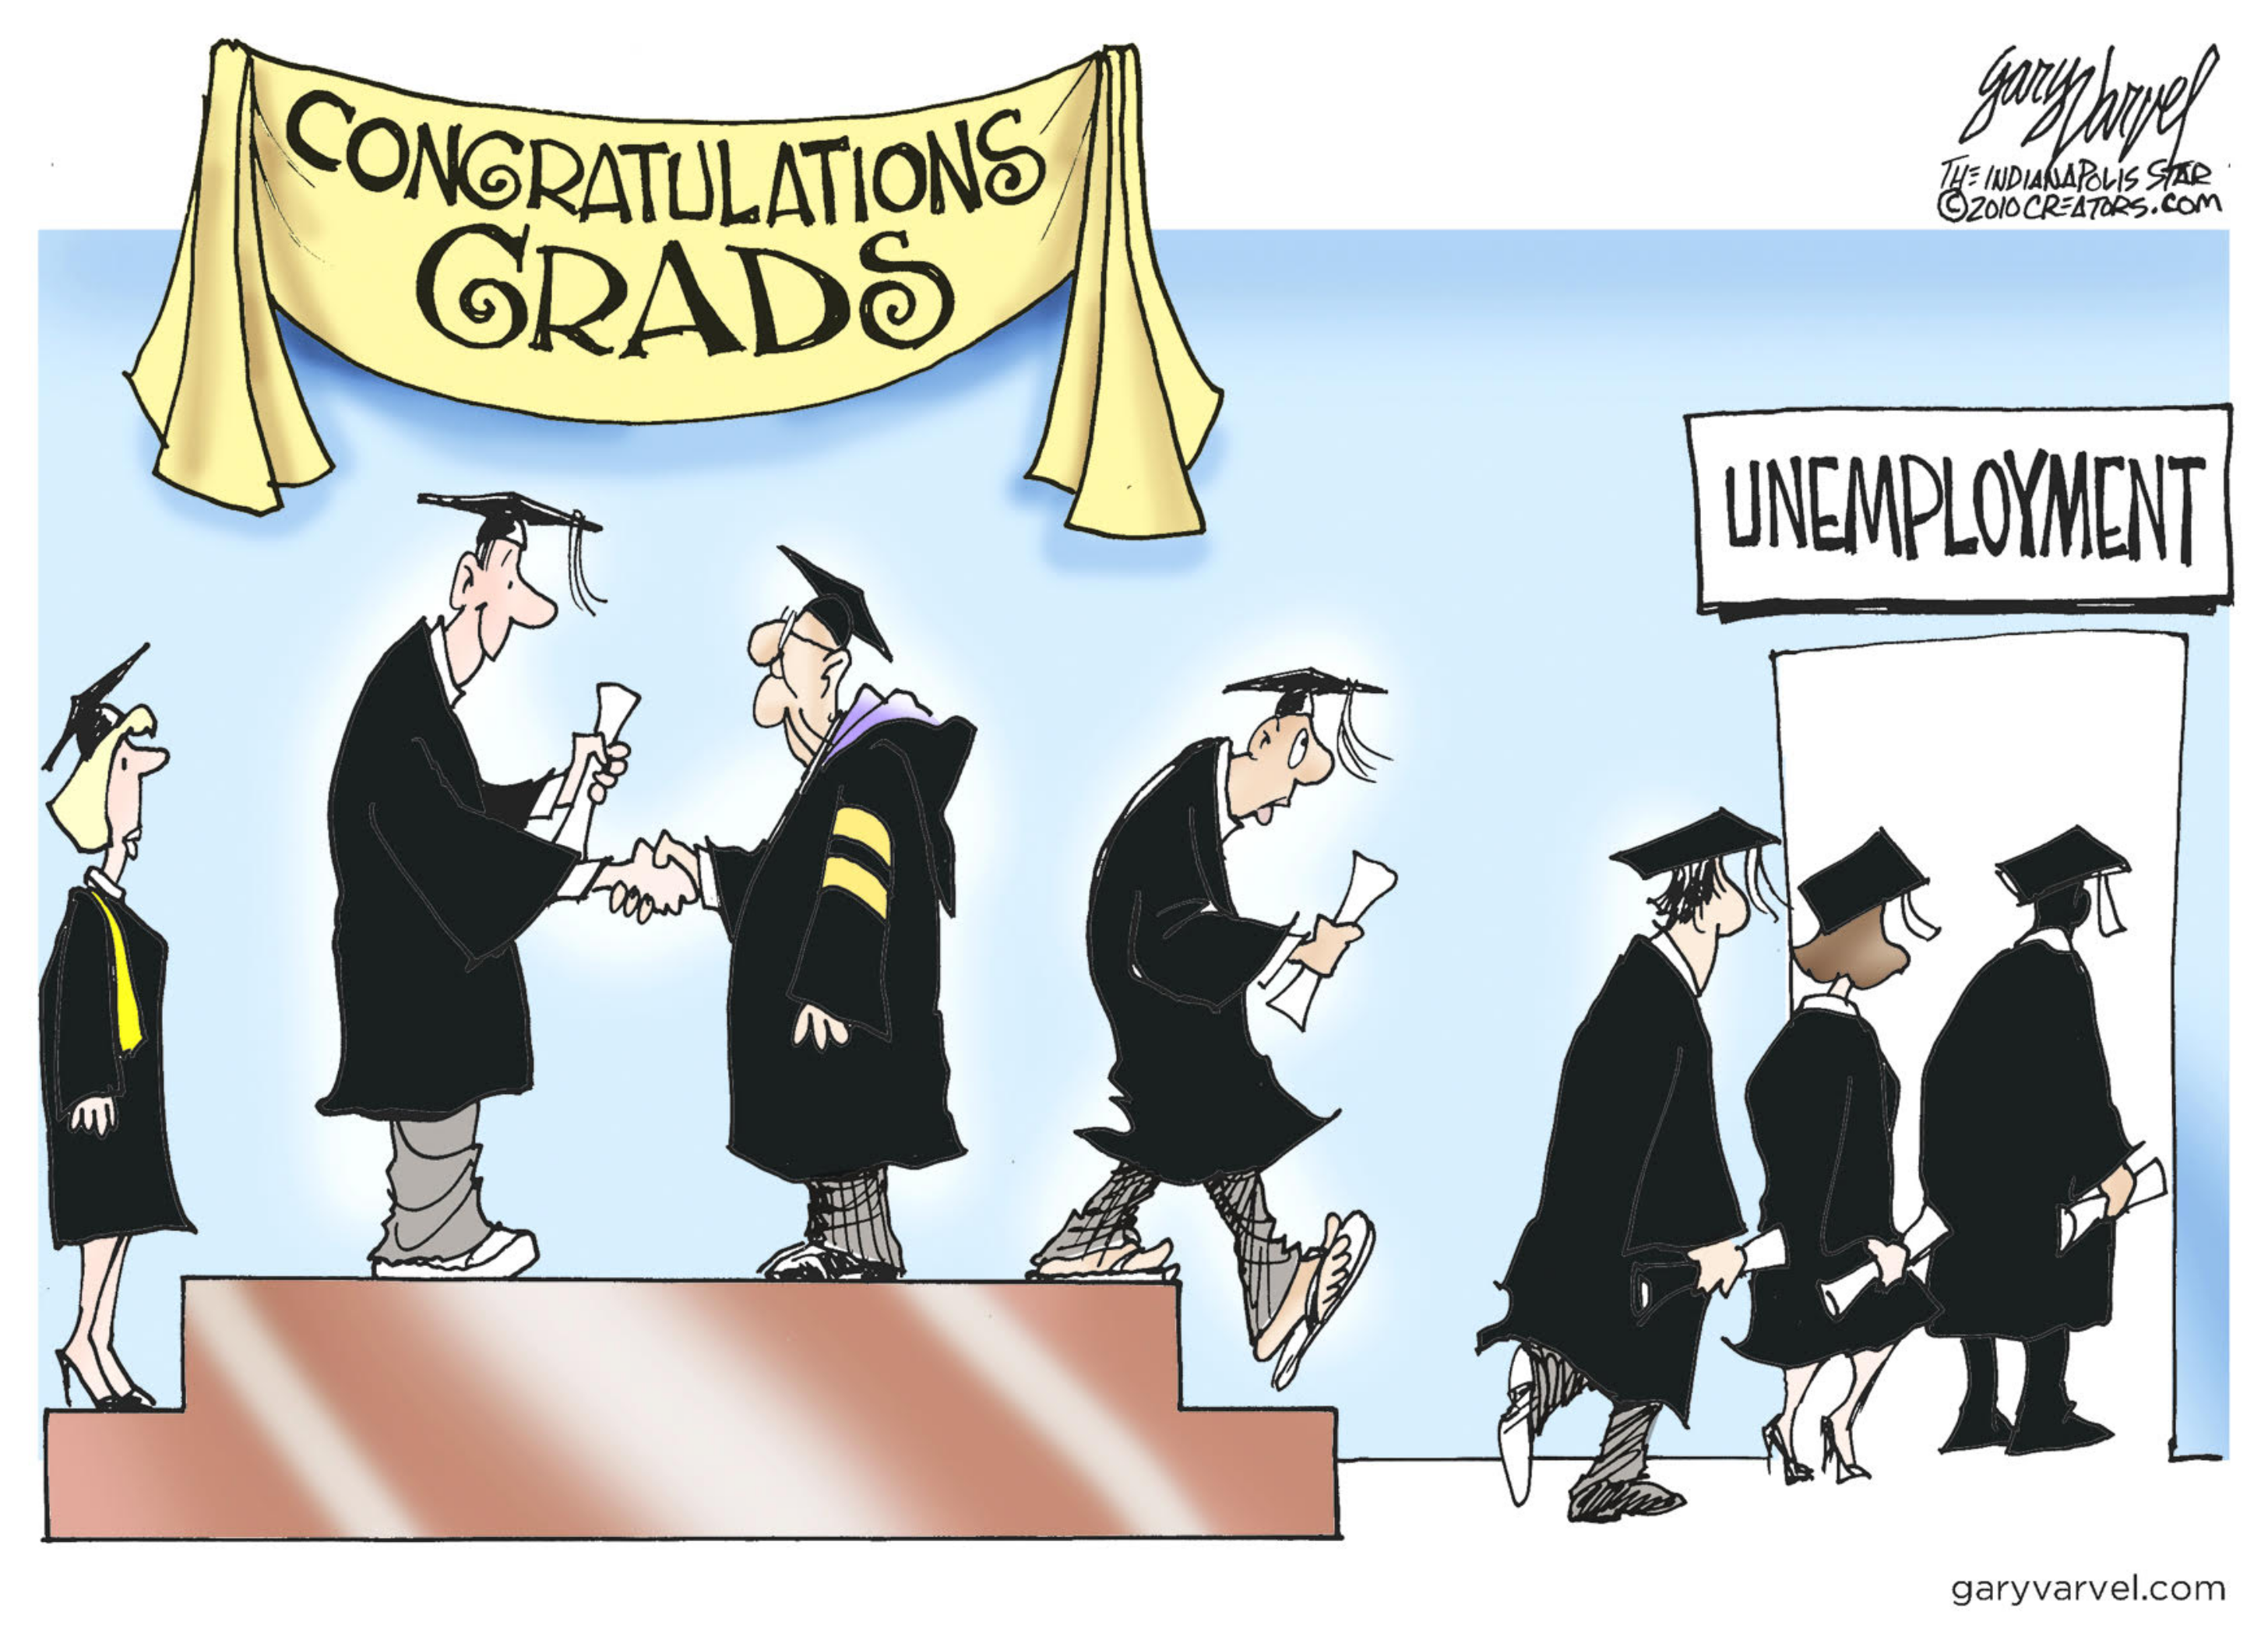 obama higher education reform